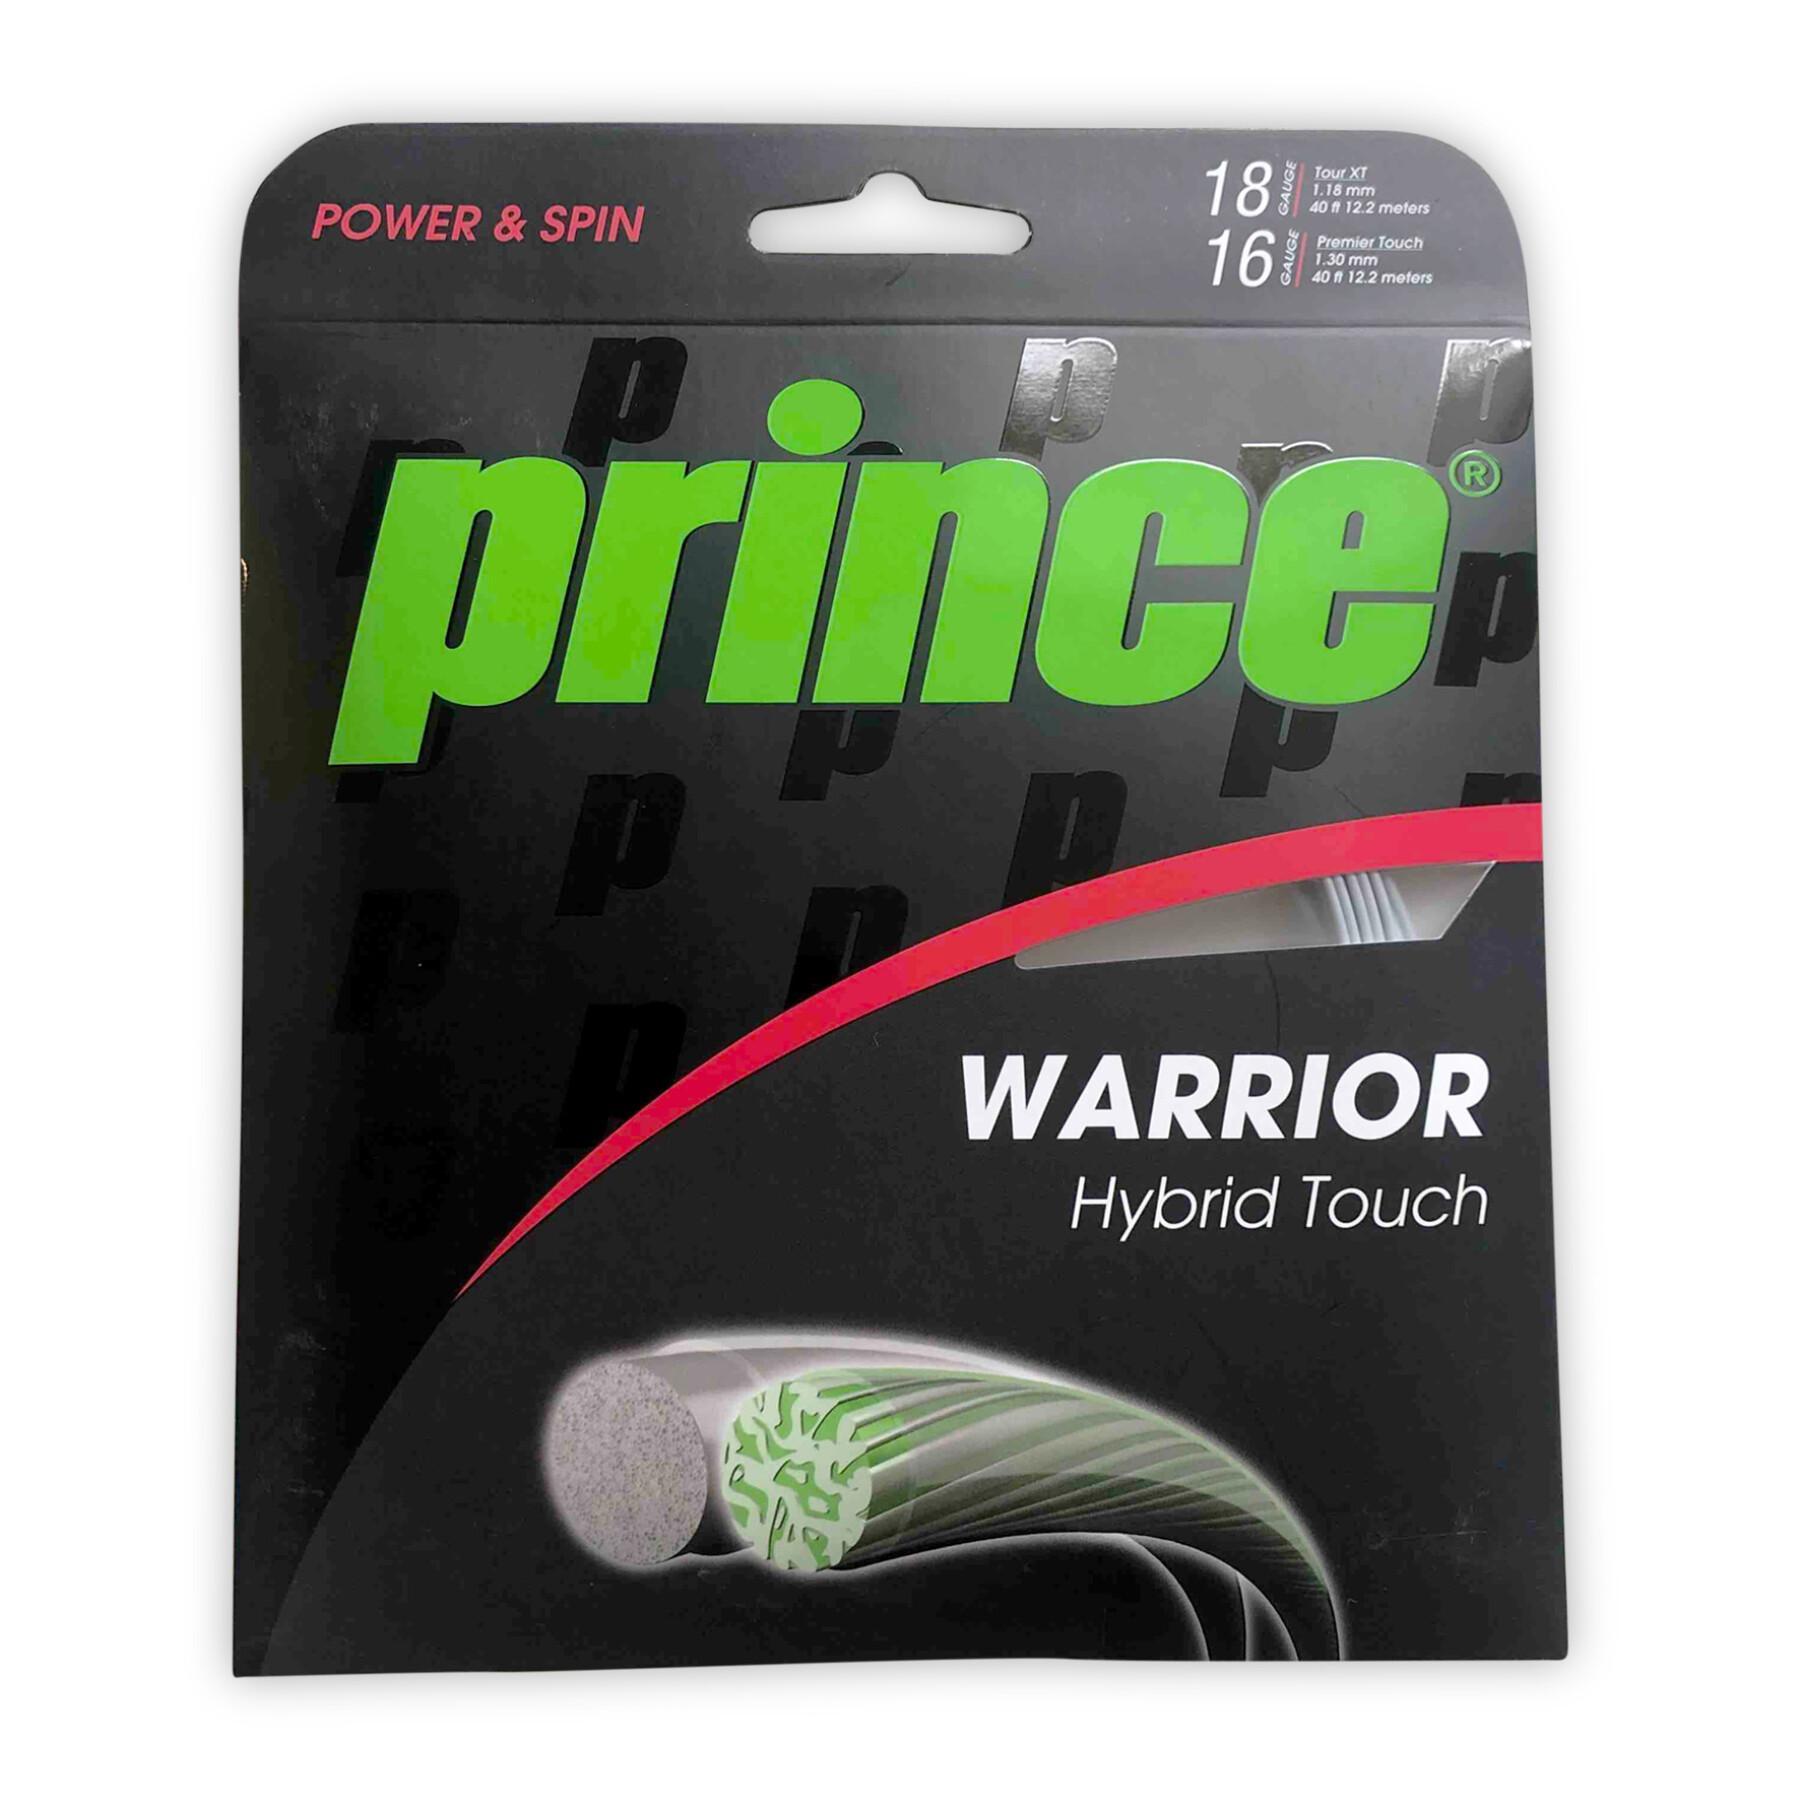 Cuerdas de tenis Prince Warrior Hybrid Touch